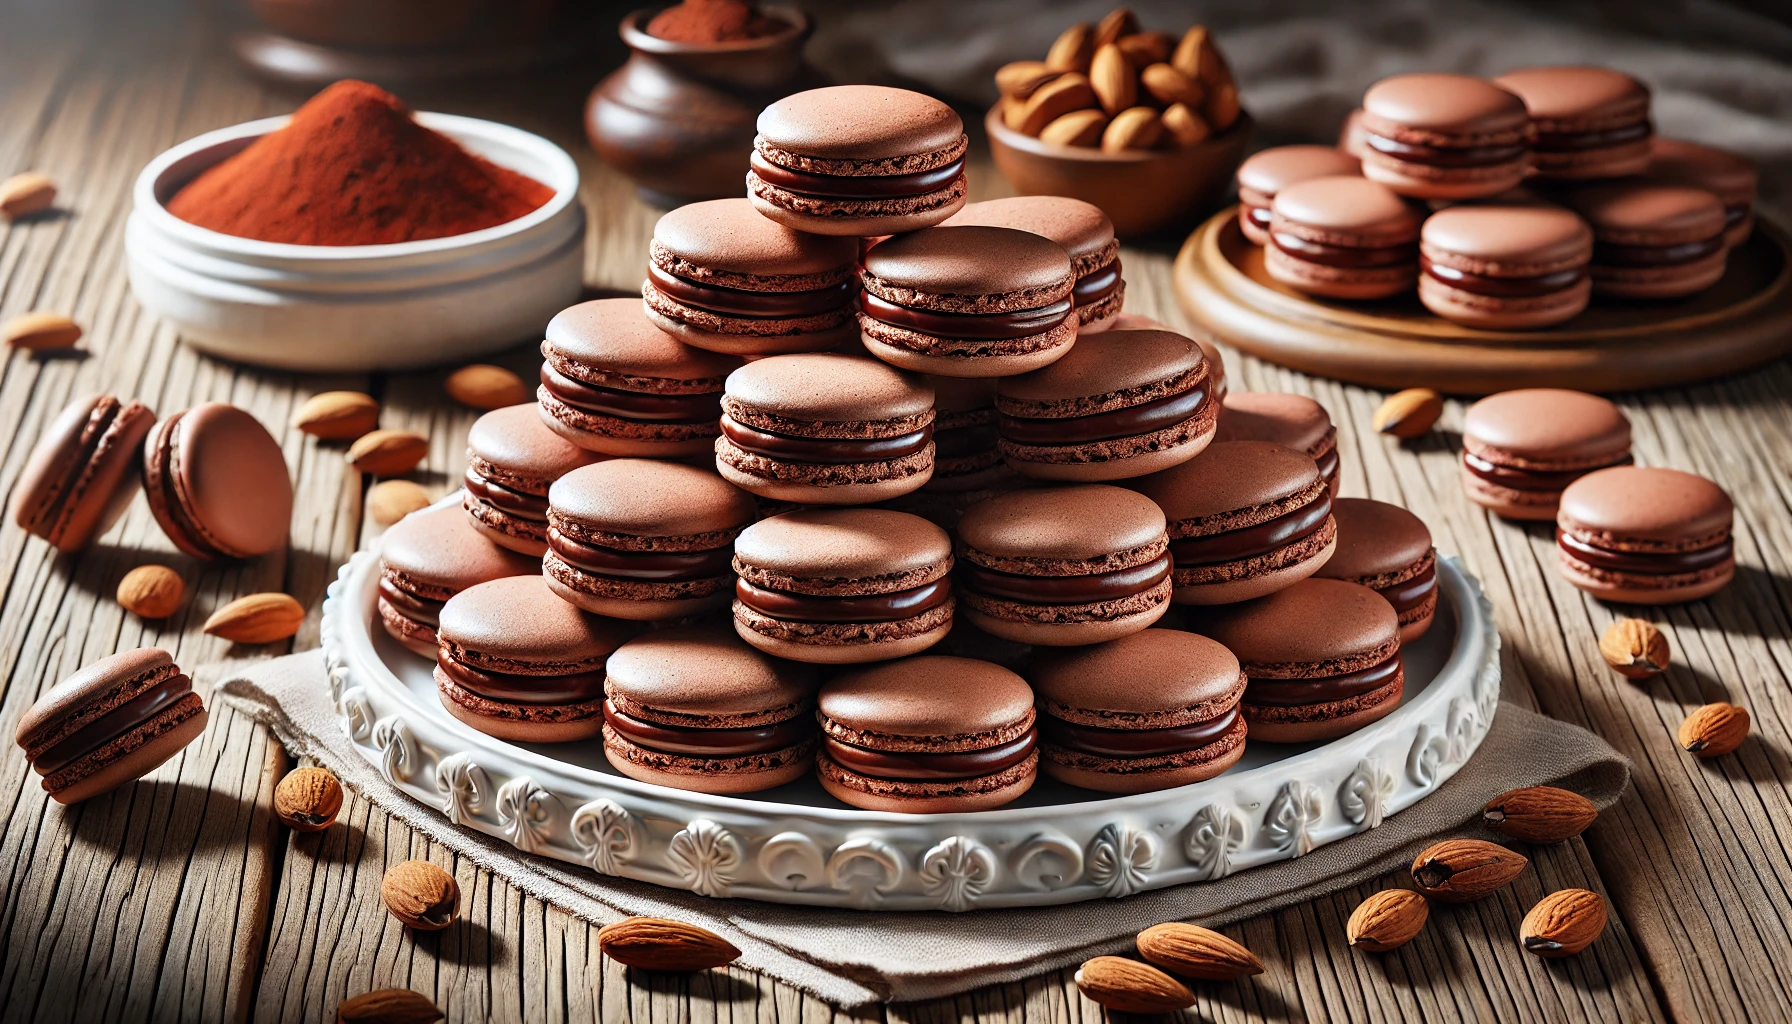 Chocolade Macarons: Franse amandelkoekjes gevuld met een rijke chocoladeganache